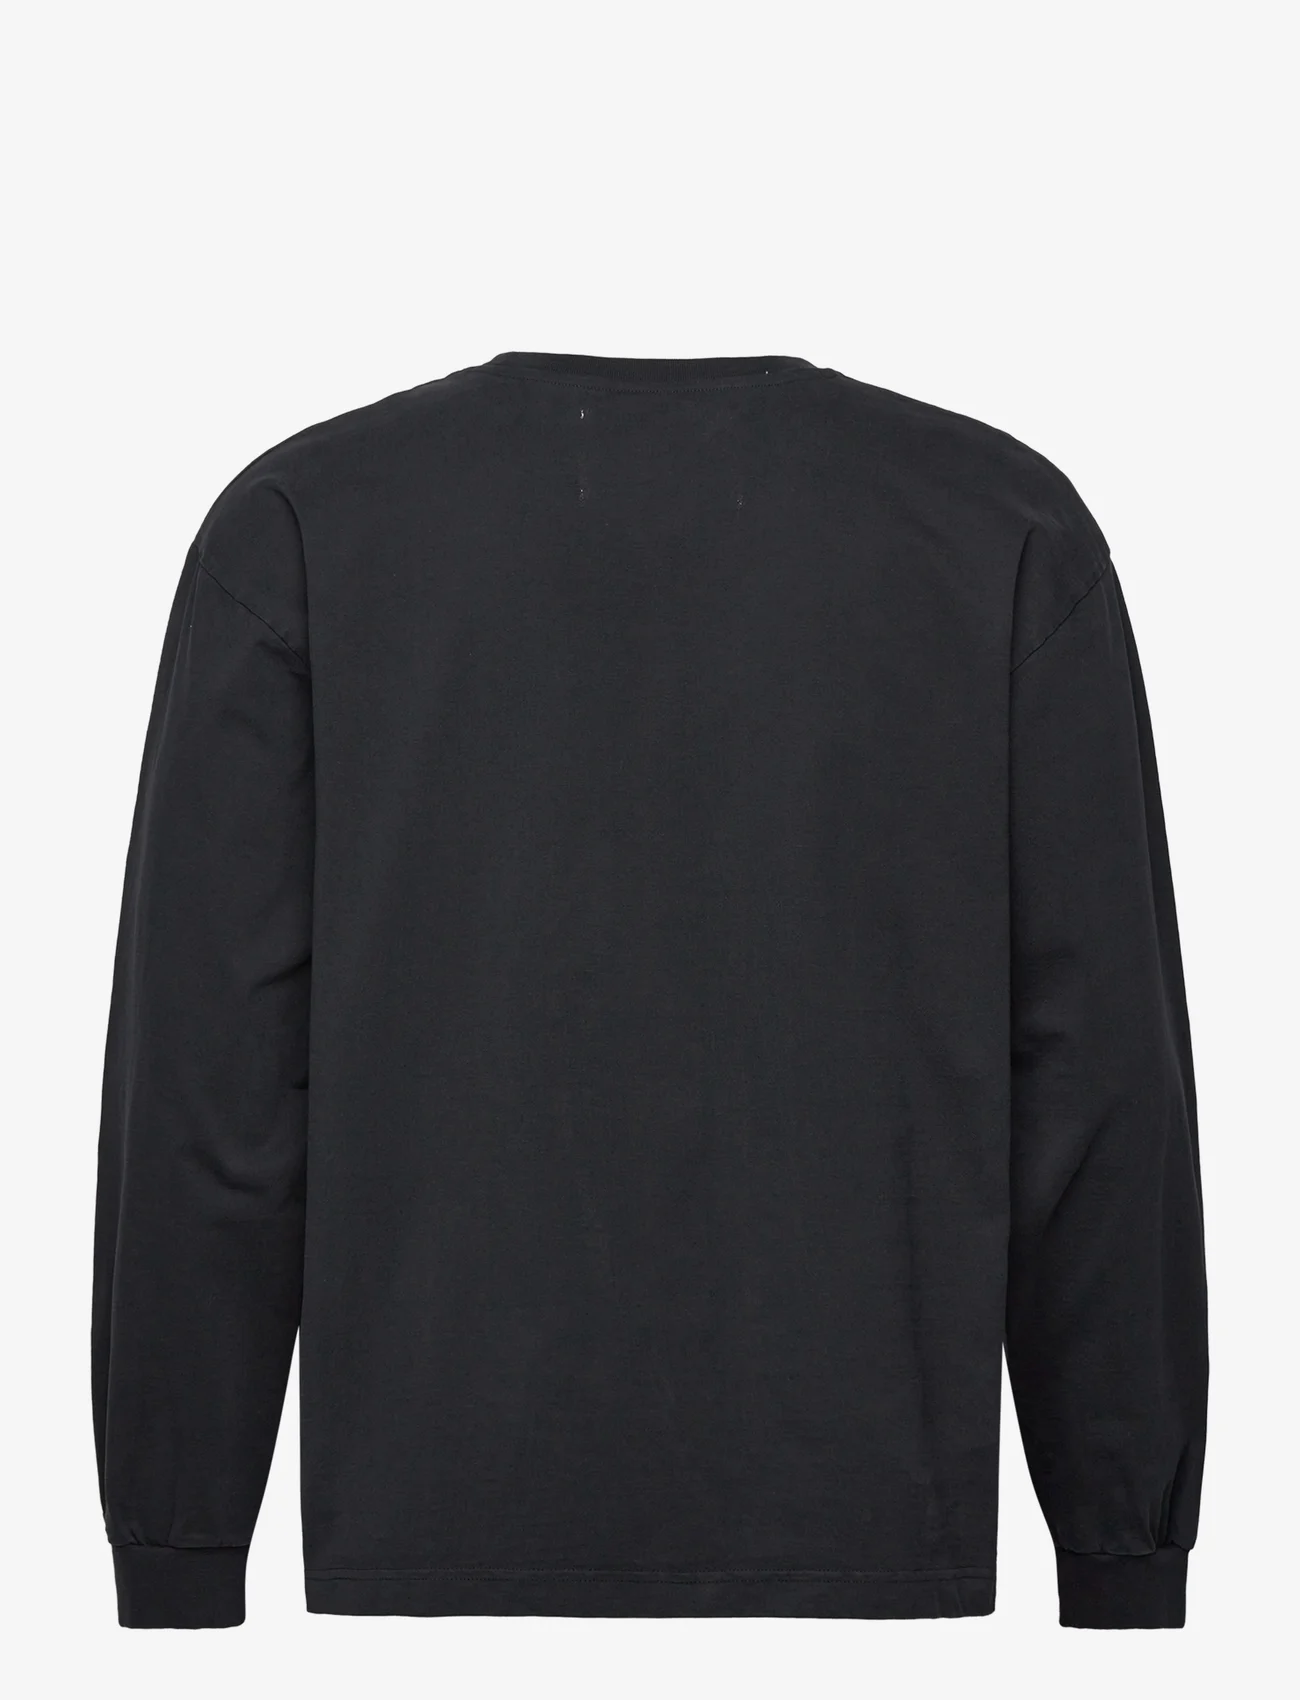 Garment Project - Heavy L/S Tee - Black - t-shirts - black - 1